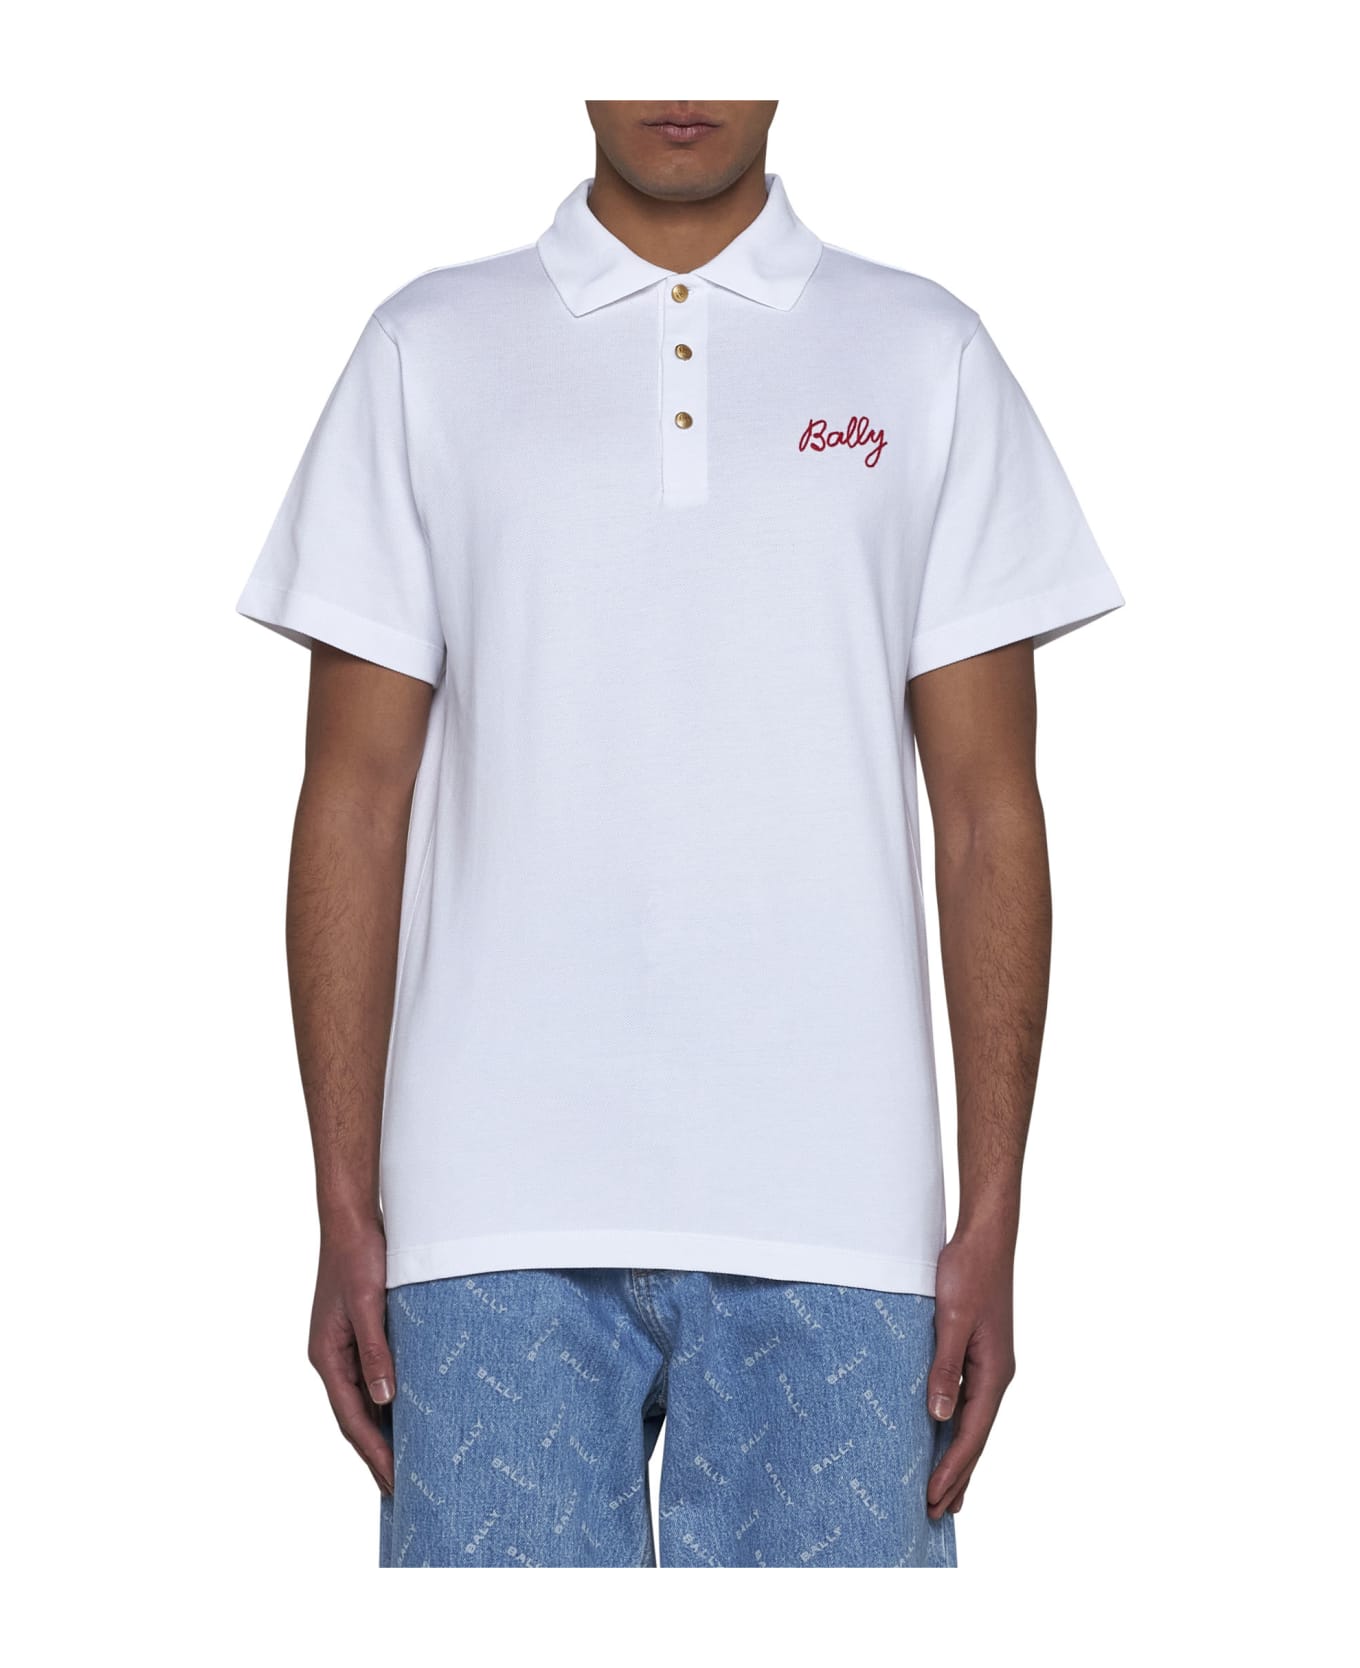 Bally Polo Shirt - White